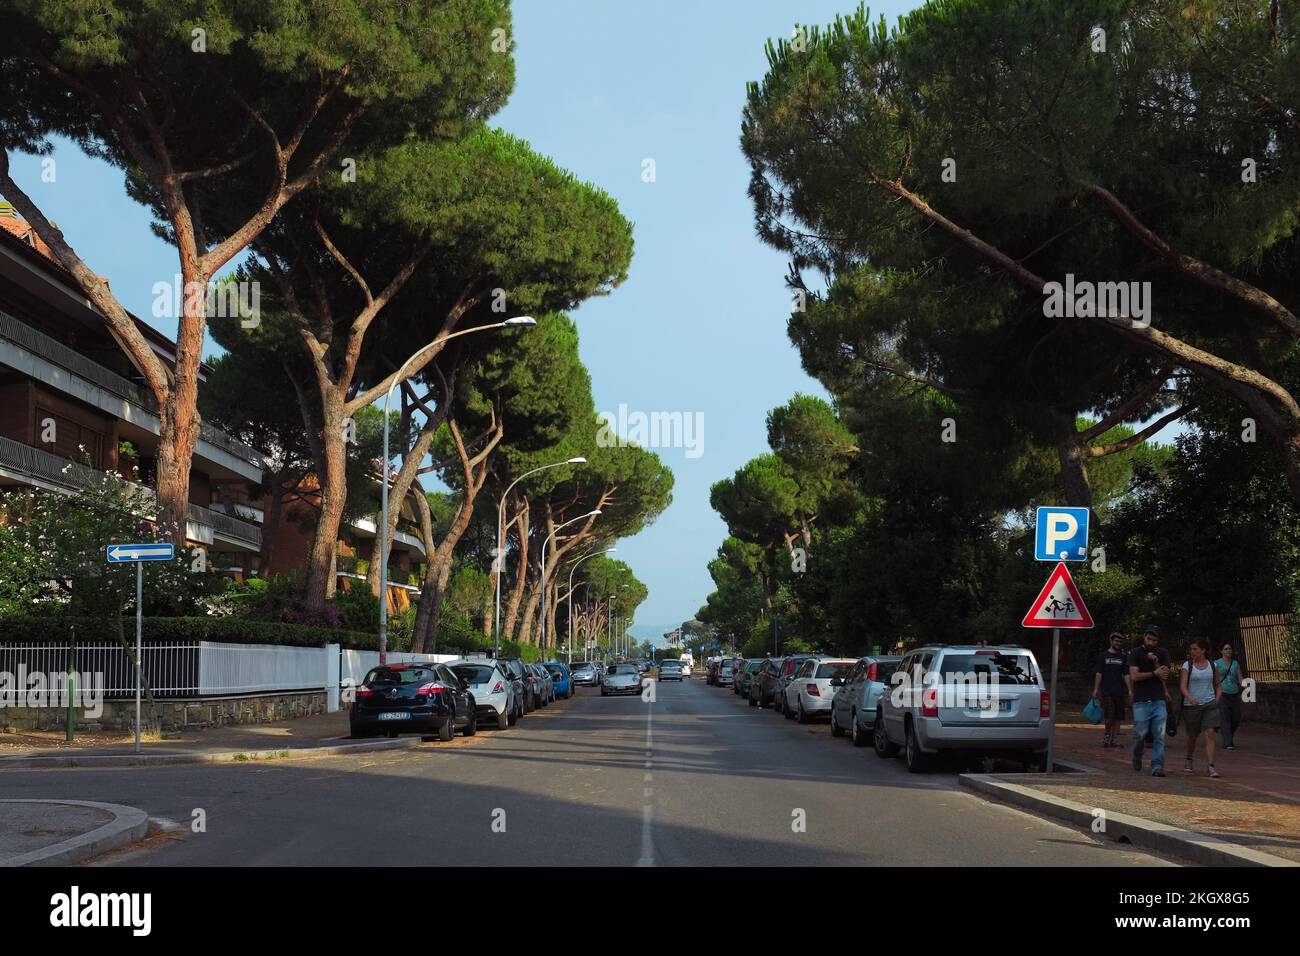 Strada fiancheggiata da auto parcheggiate e alti pini italiani fuori dal Parco degli Acquedotti, un parco pubblico degli acquedotti nella periferia di Roma. Foto Stock